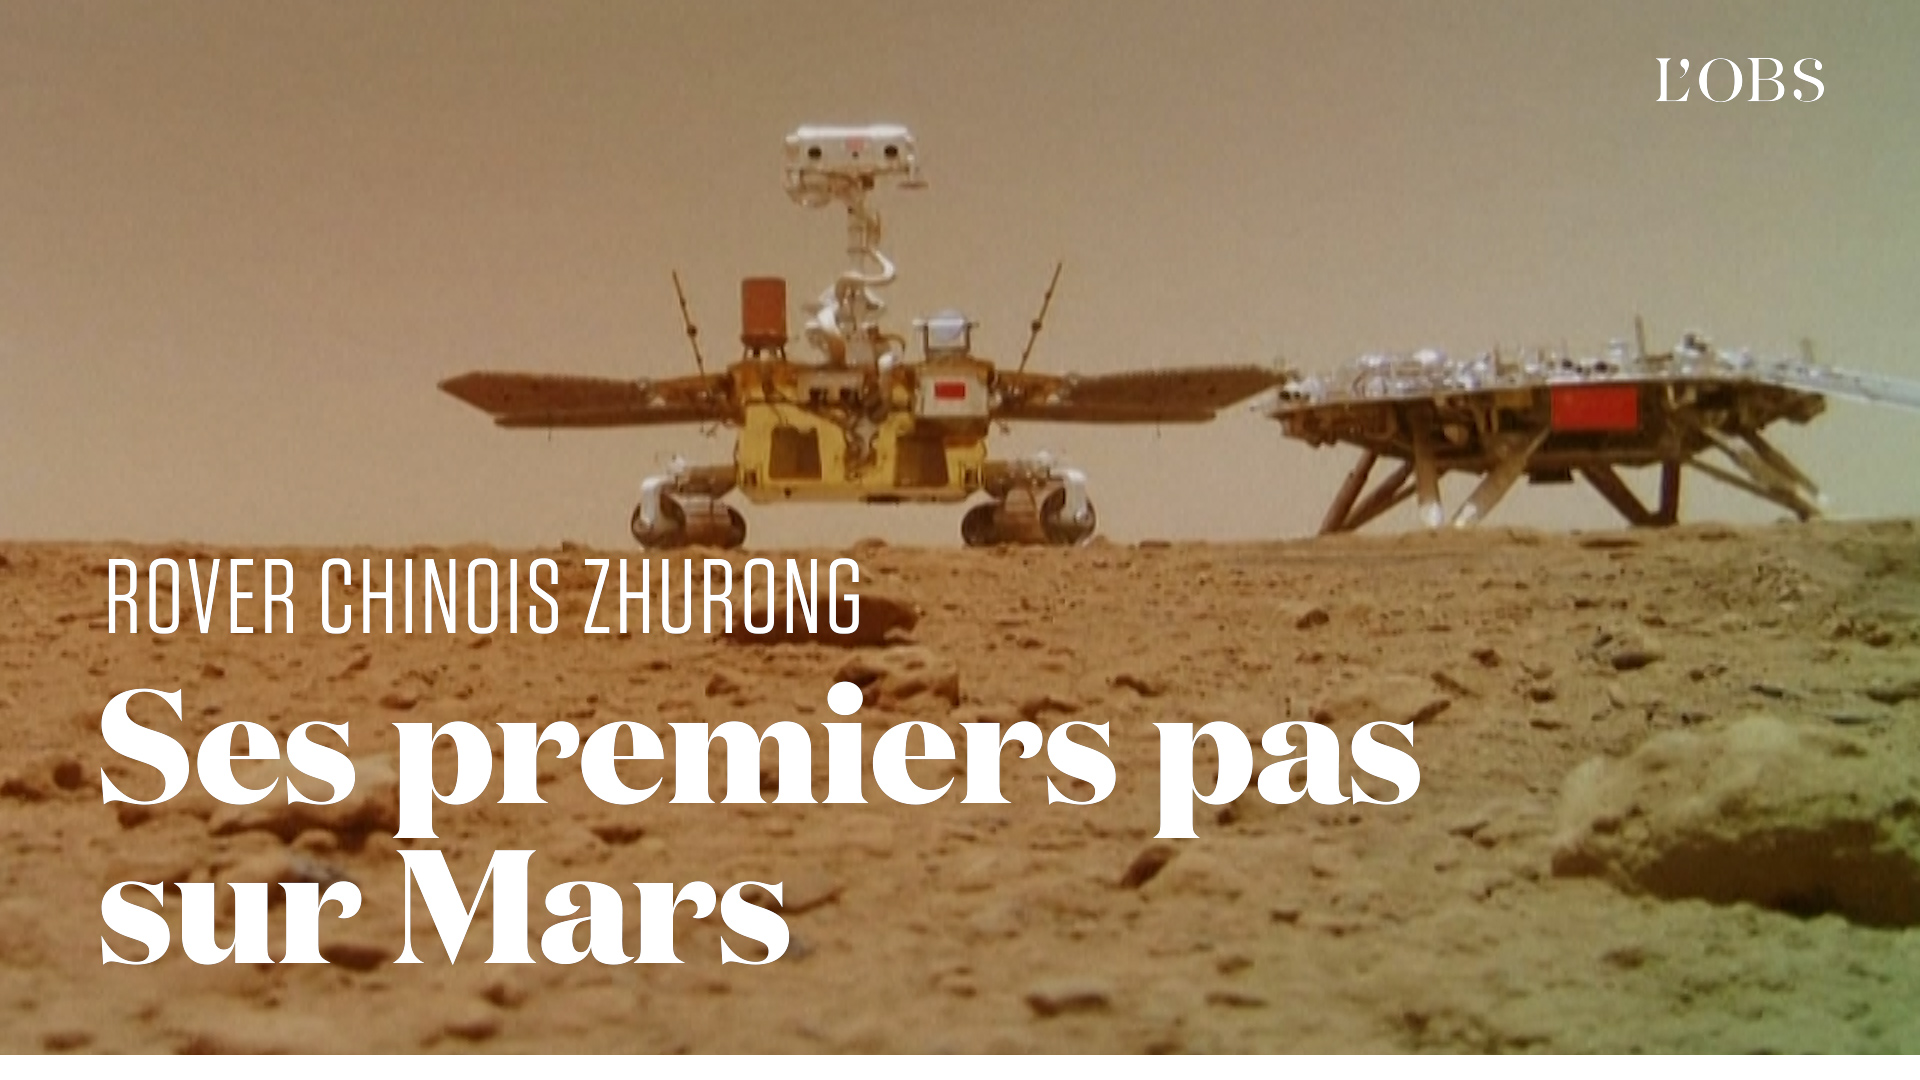 Les images du rover chinois explorant la planète Mars dévoilées